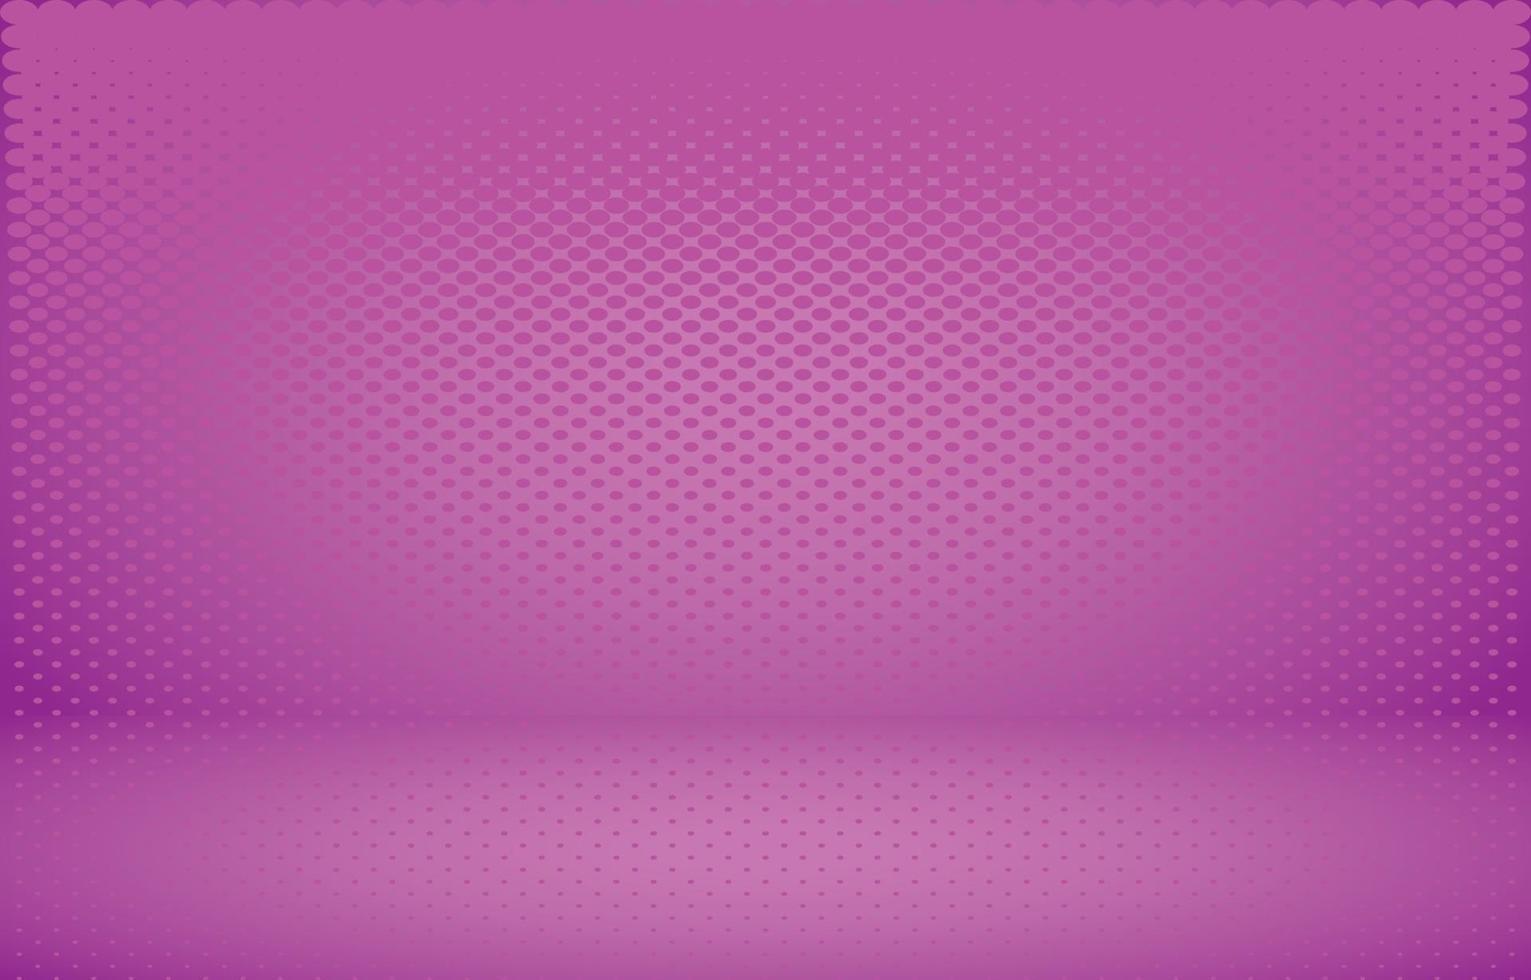 Pink studio empty room background vector